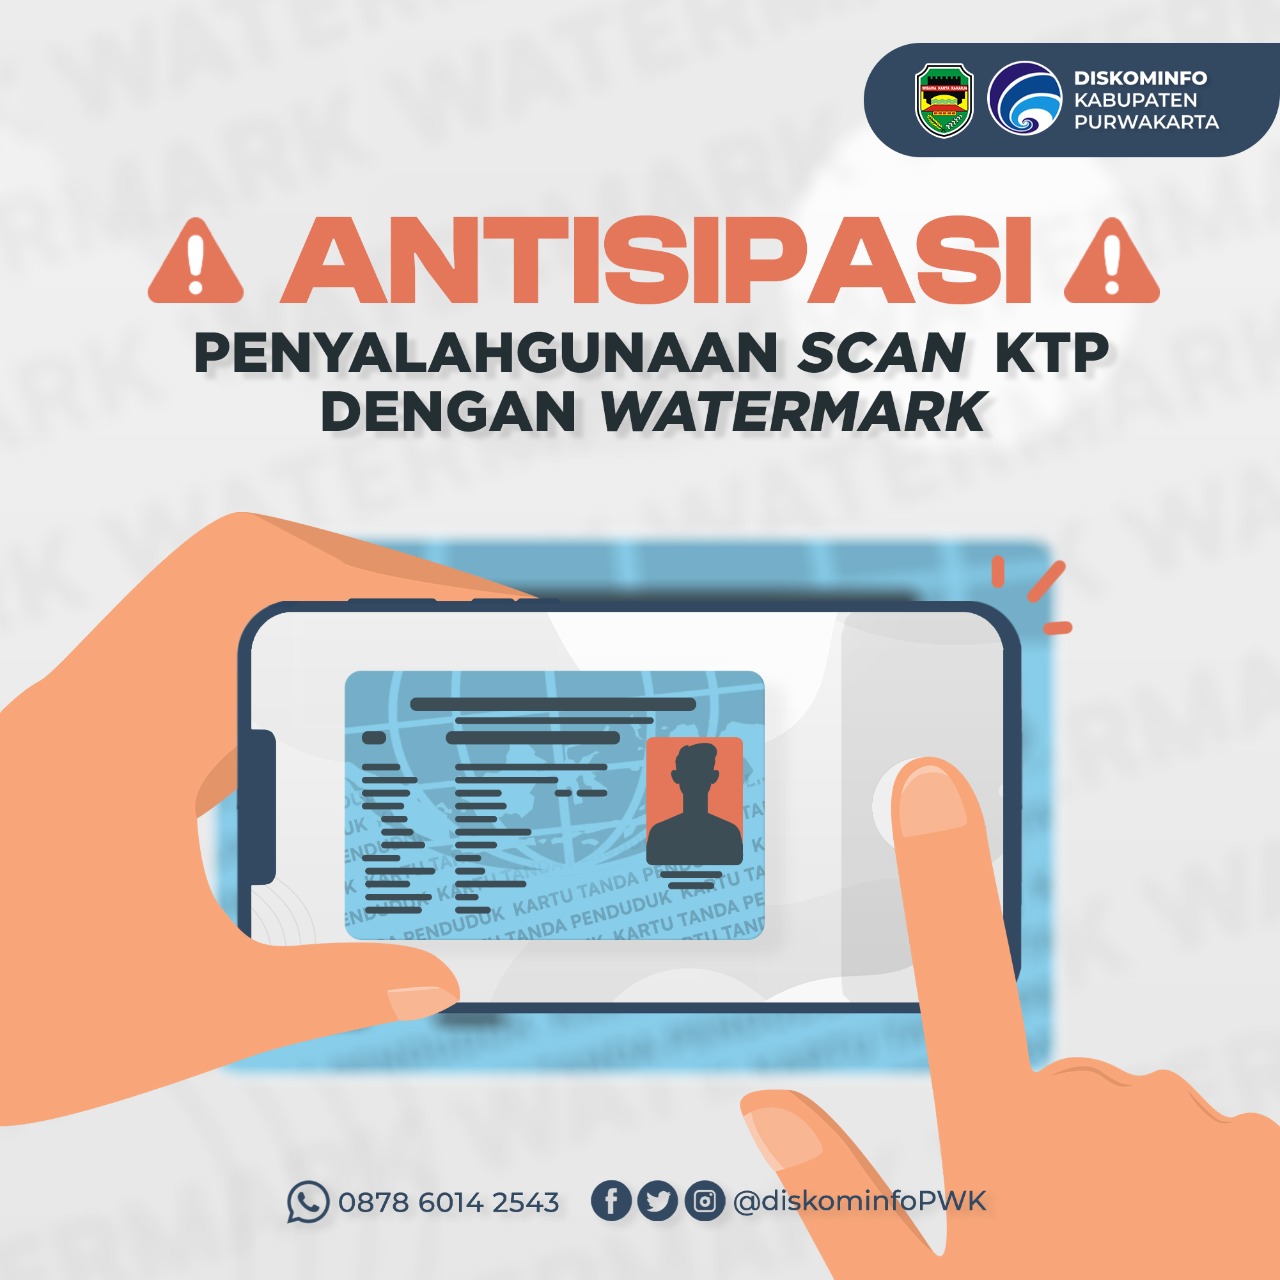 Antisipasi Penyalahgunaan Scan KTP dengan Watermark